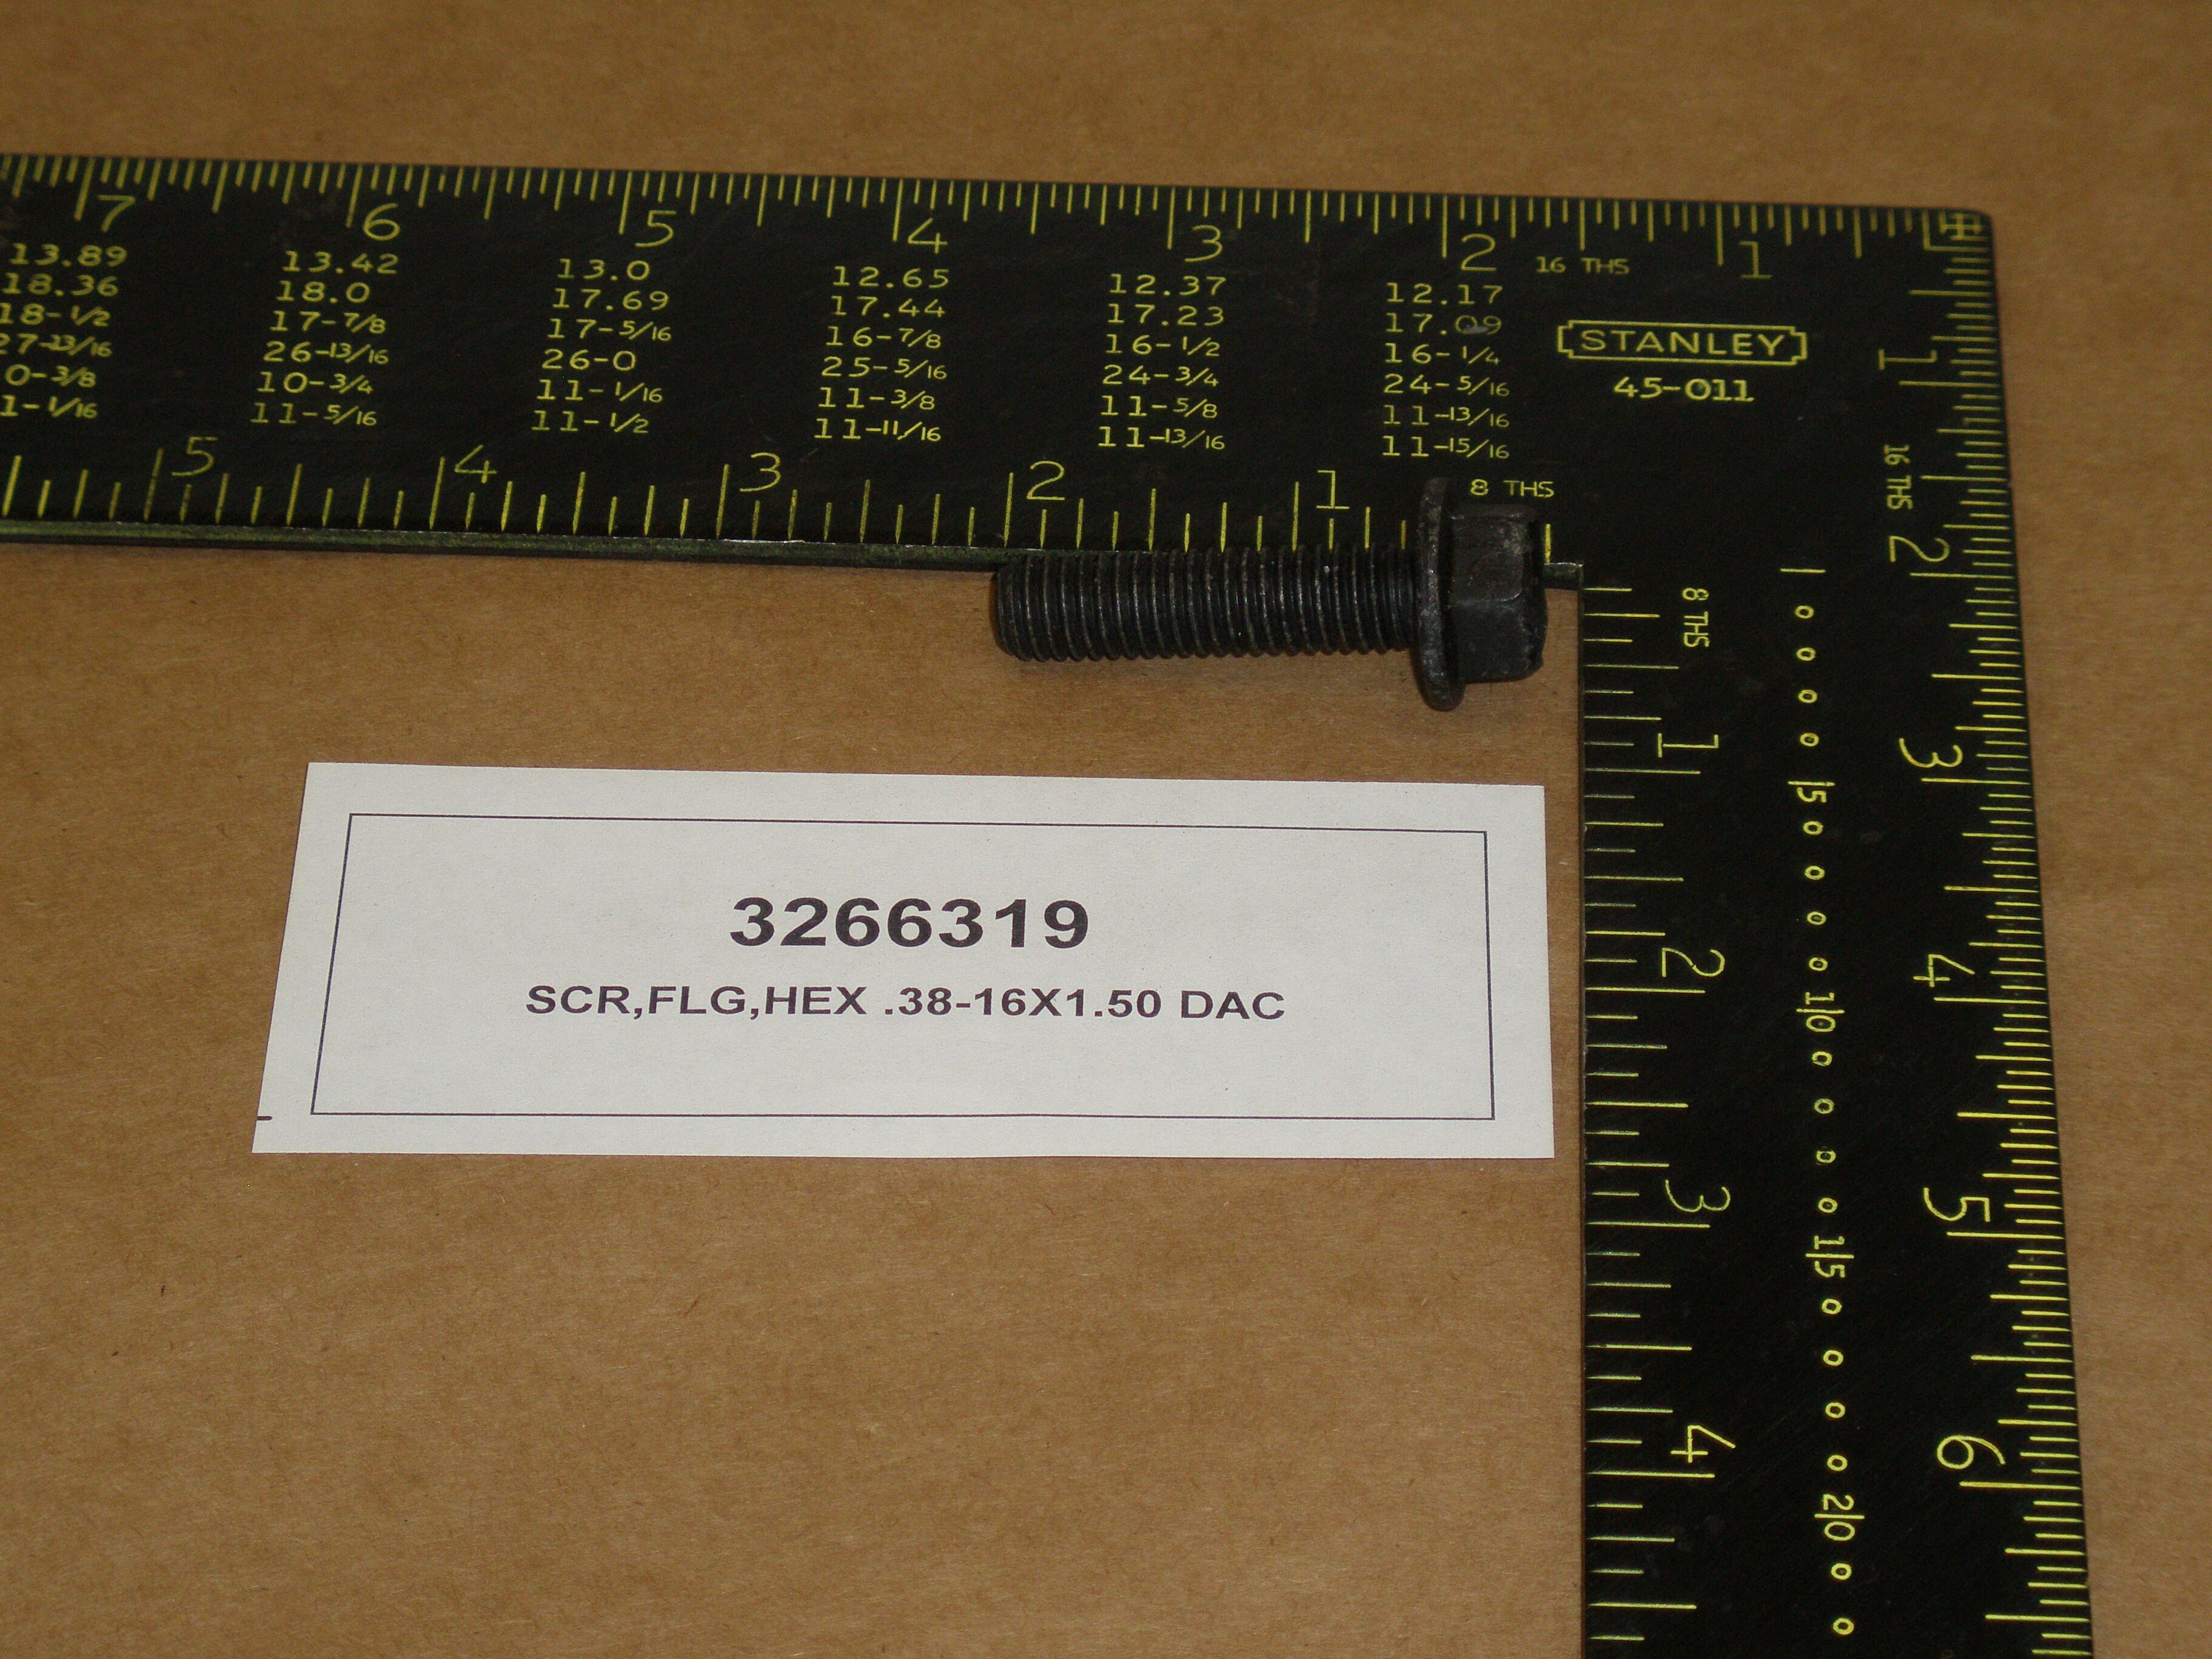 SCR,FLG,HEX .38-16X1.50 G8 DAC